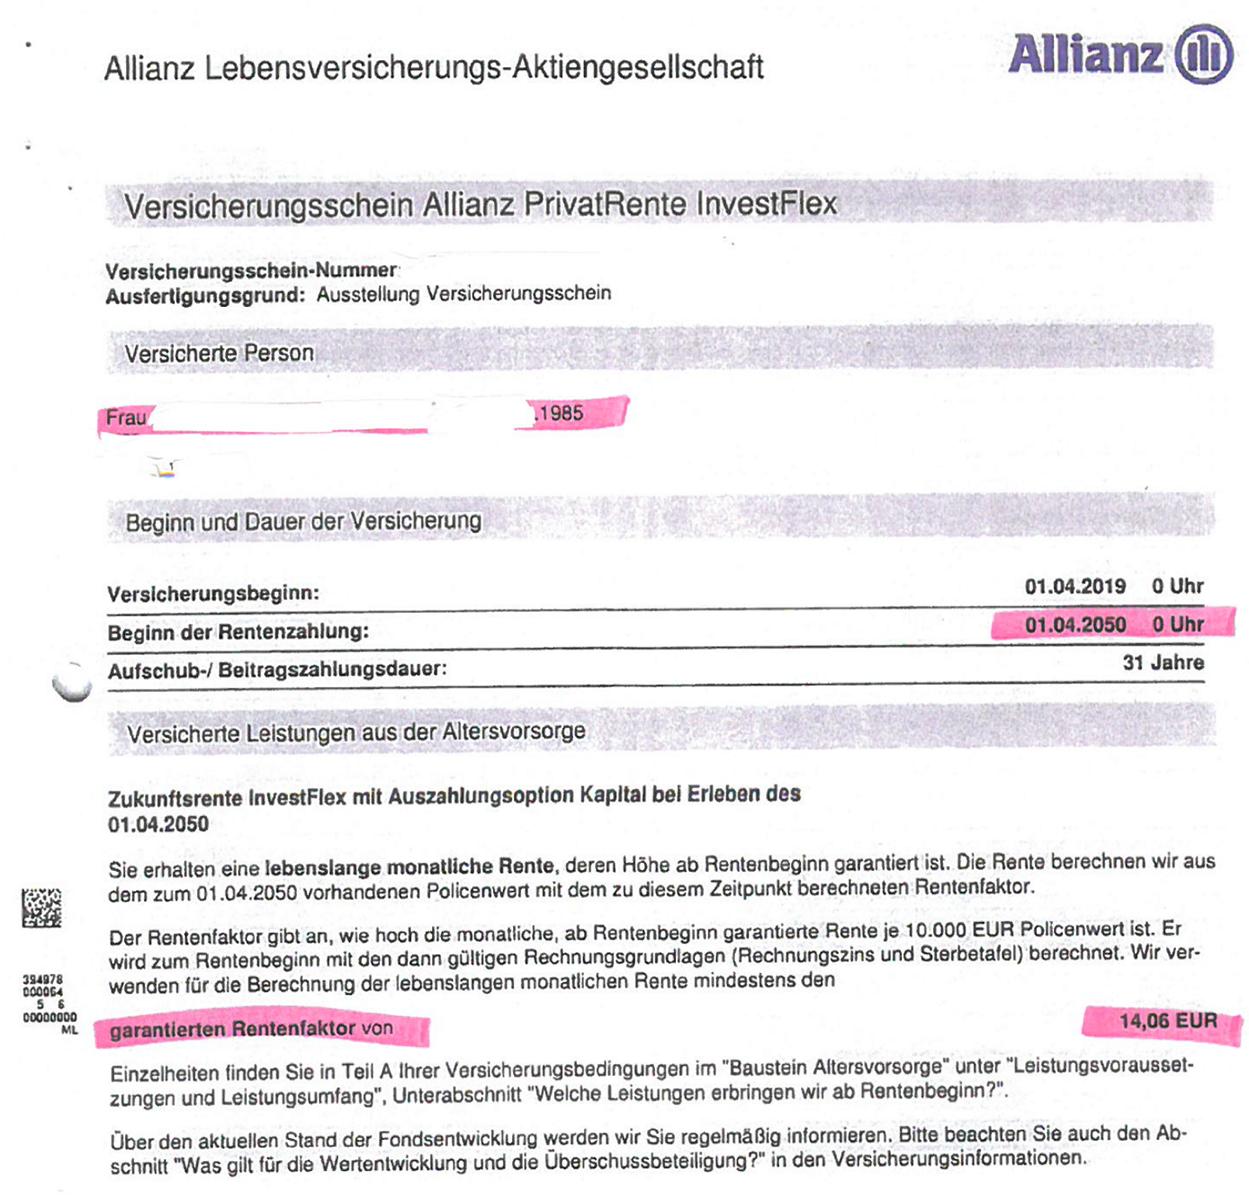 1 Vorsicht Allianz PrivateRente InvestFlex Versicherungsdaten